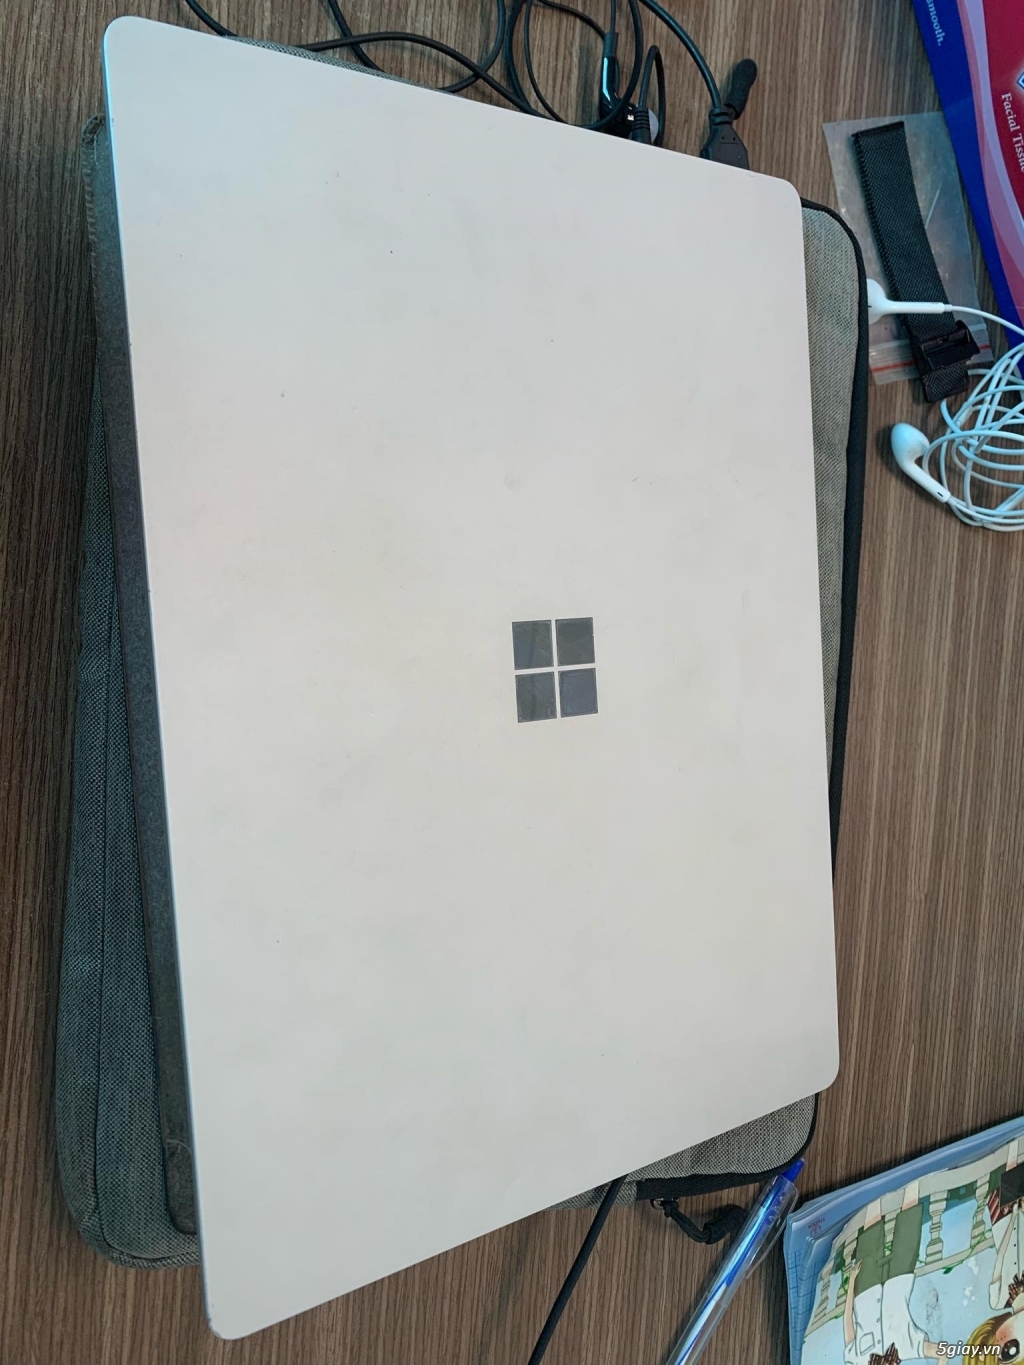 Cần bán Surface laptop 1 core i5, ram 4gb, ssd 128g